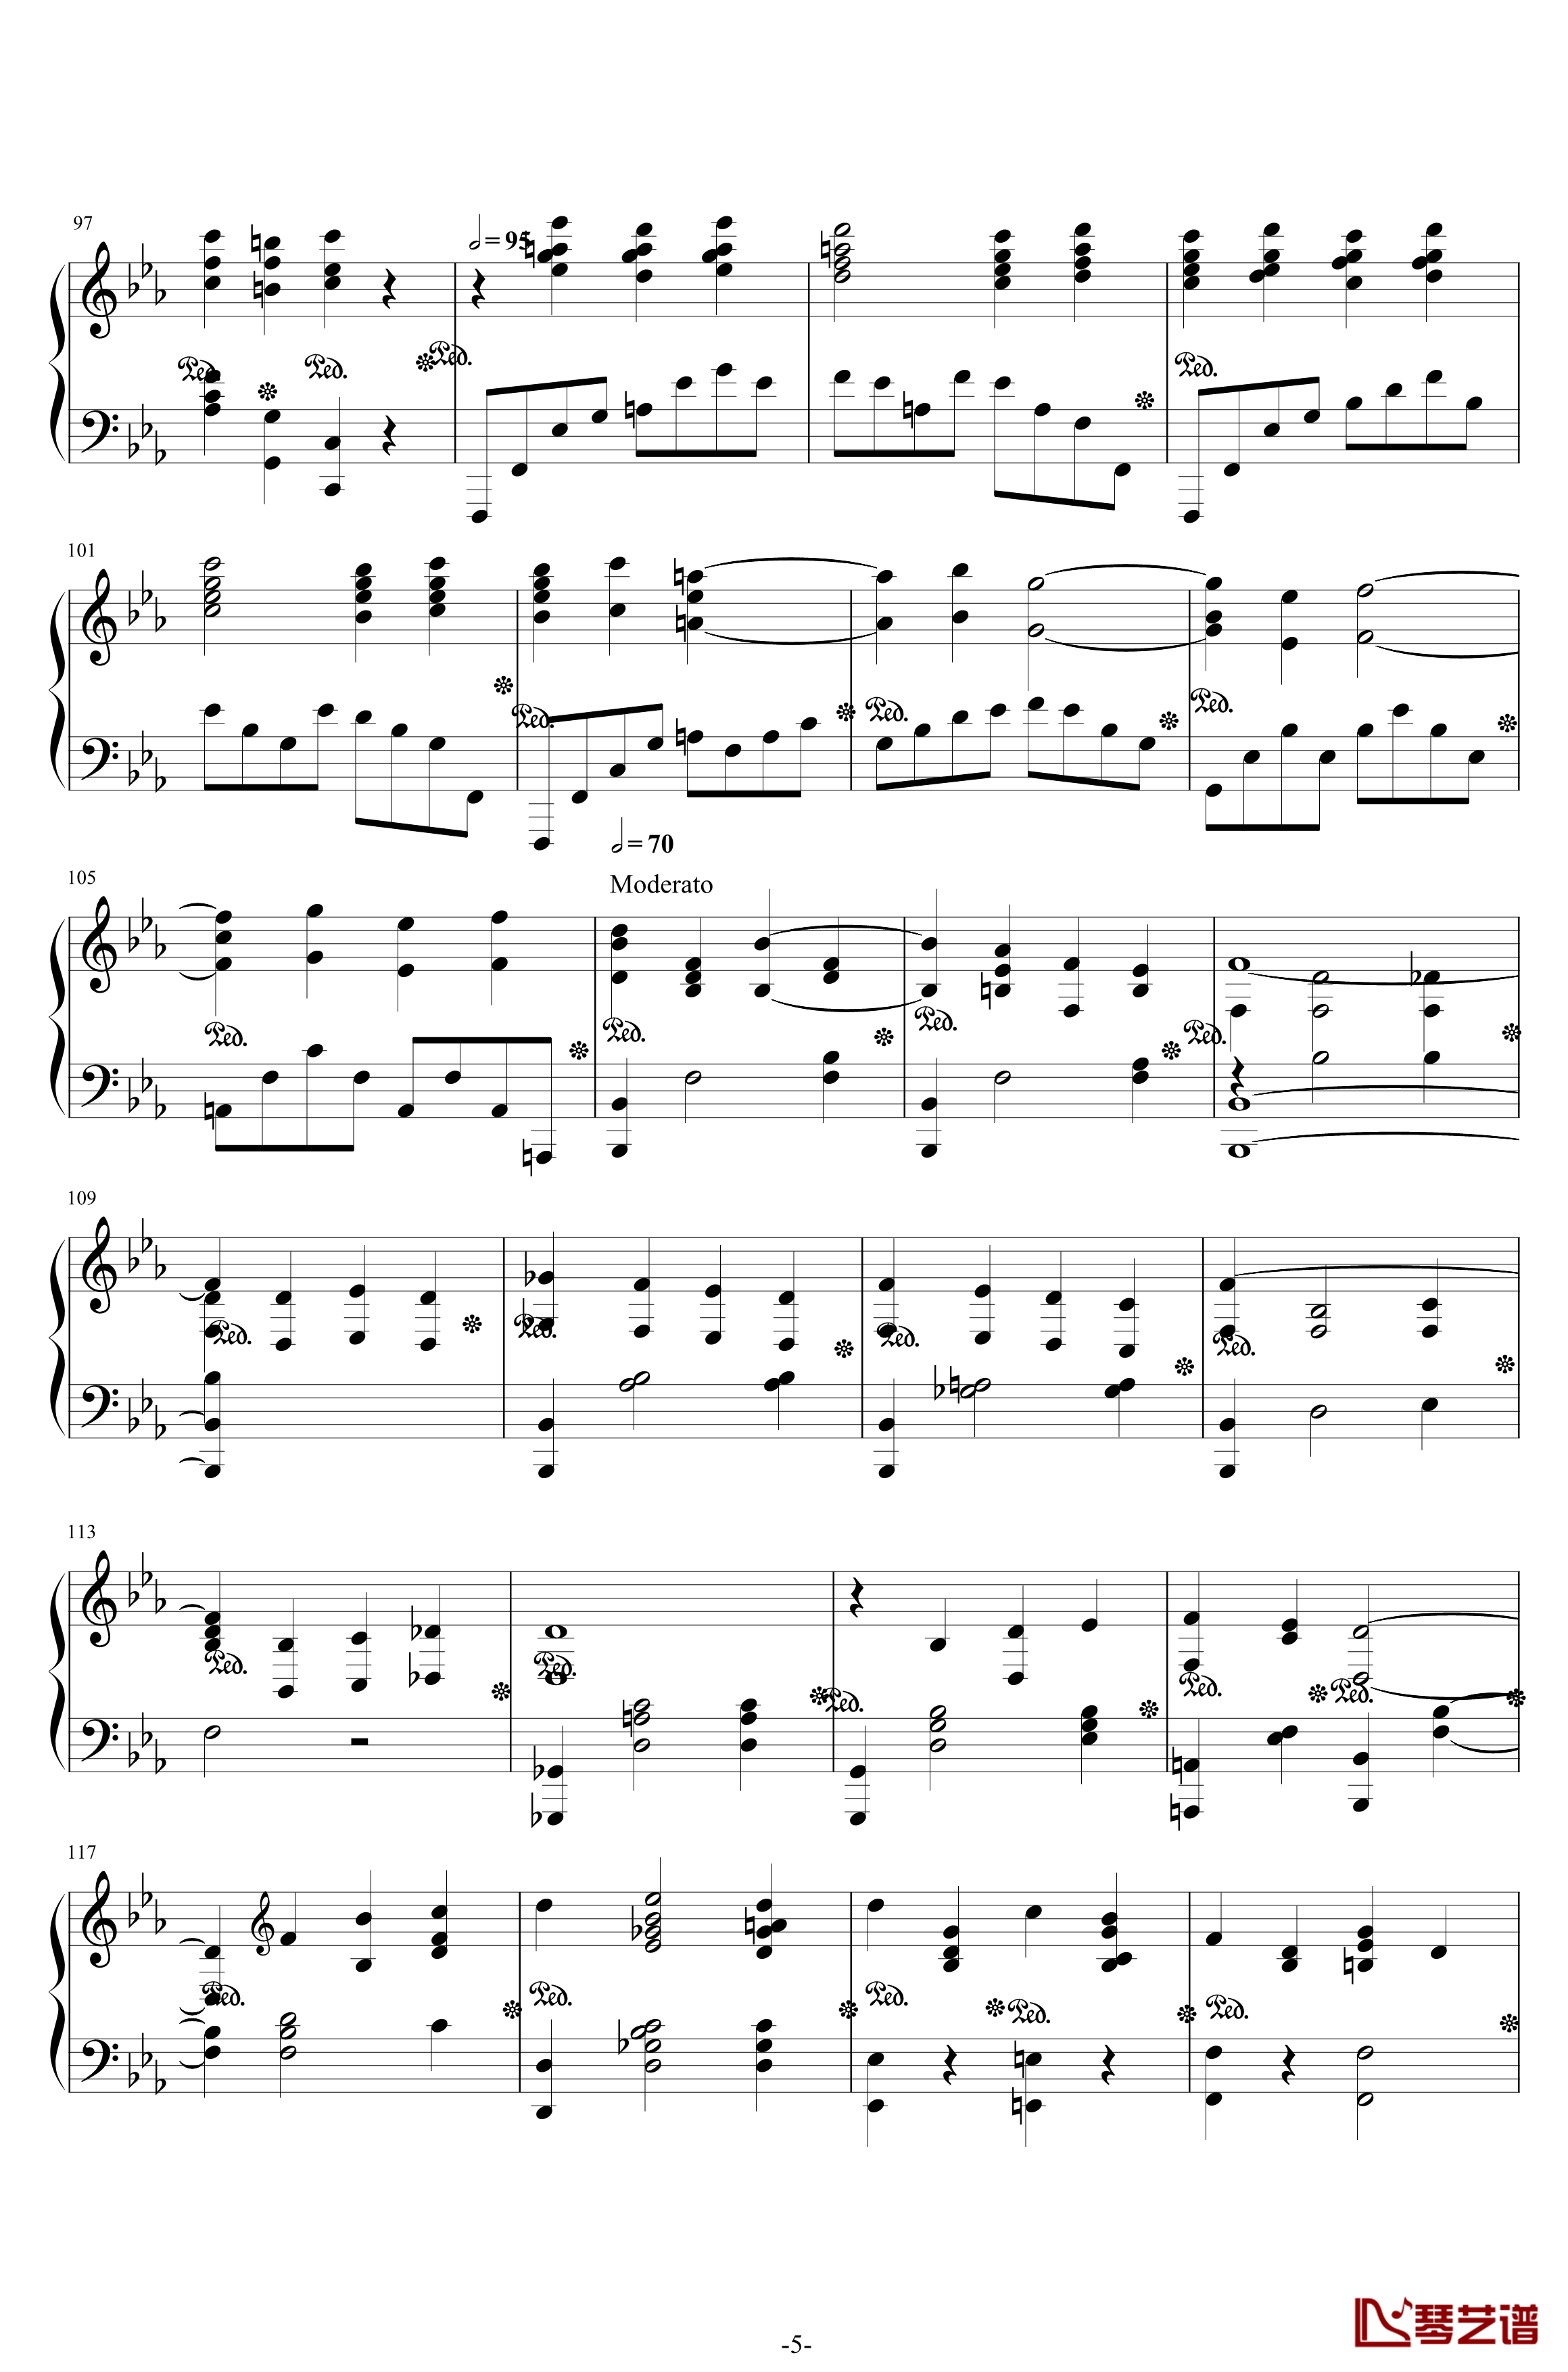 第二钢琴协奏曲钢琴谱-第三乐章独奏版-c小调-拉赫马尼若夫5